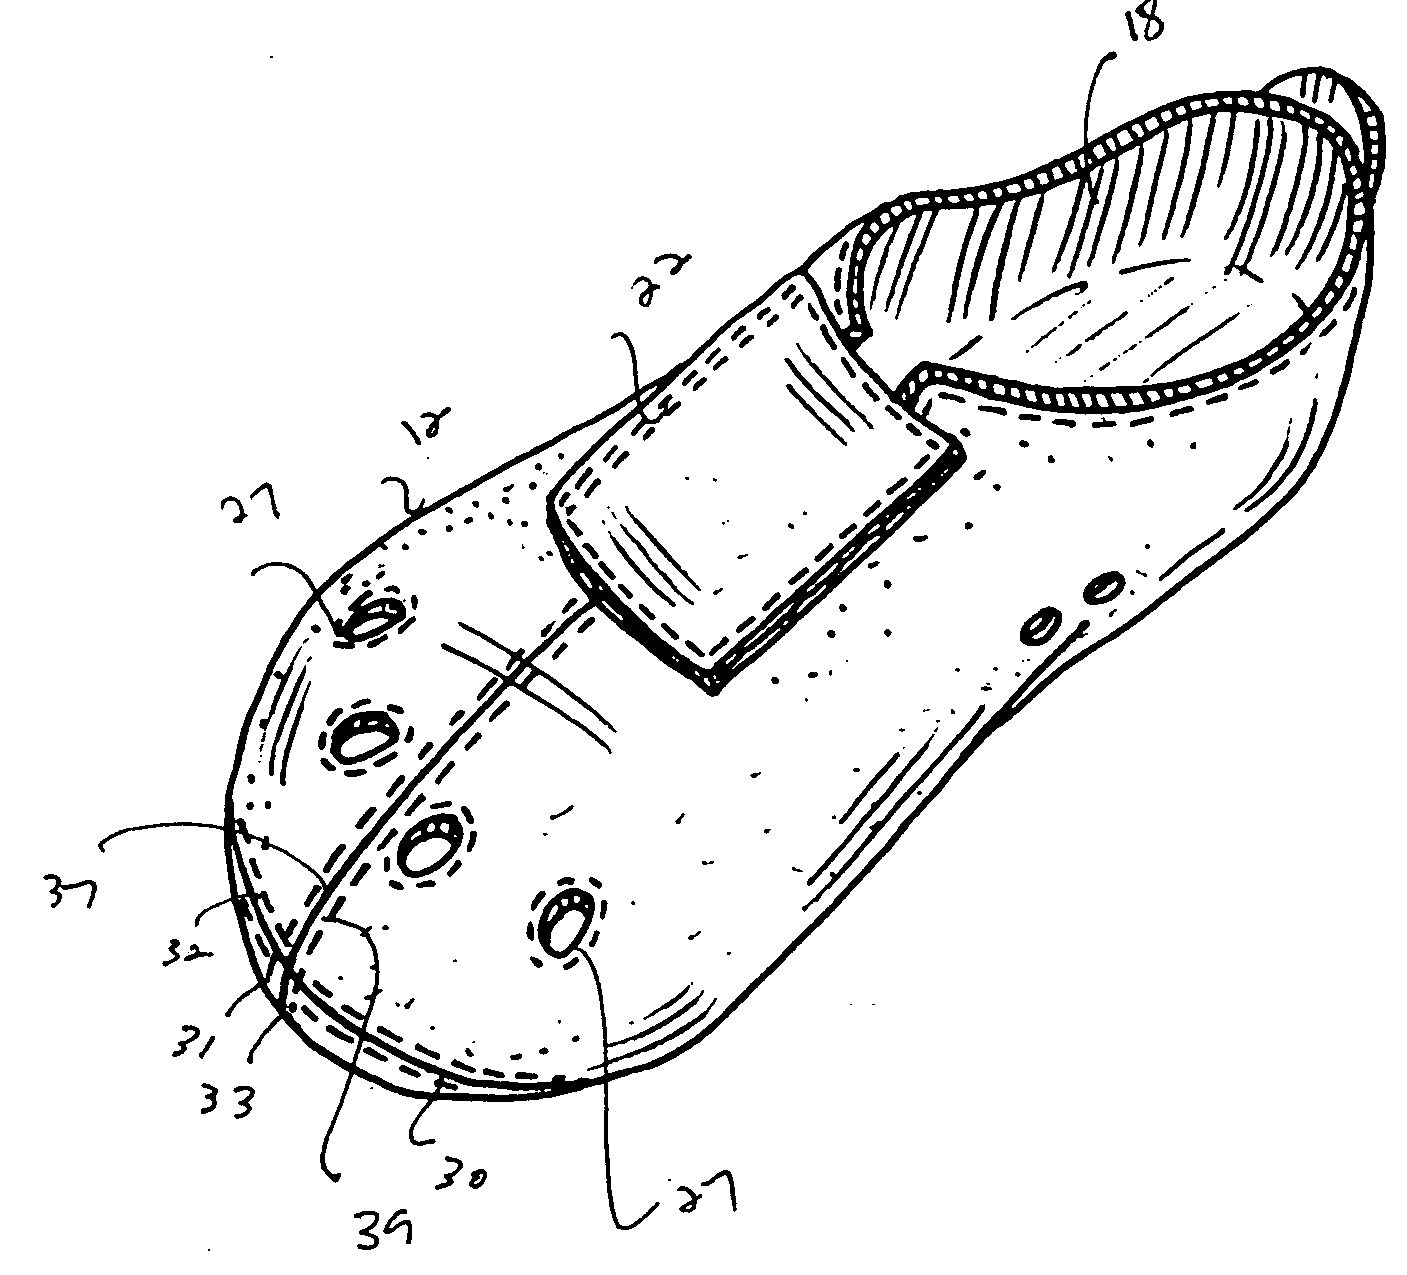 Reversible hygiene shoe